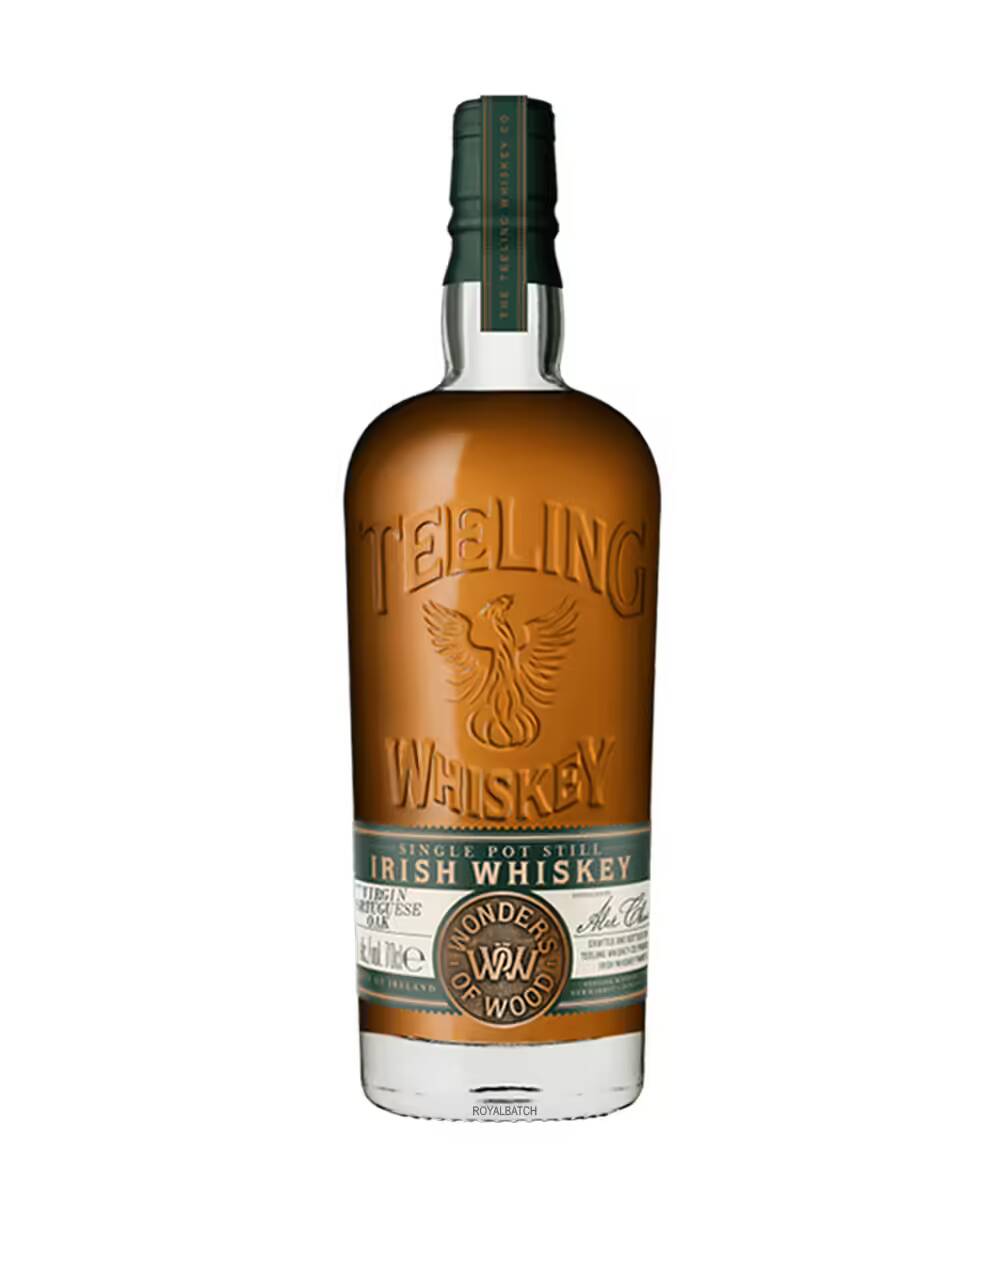 Buy Teeling Small Batch Irish Whiskey